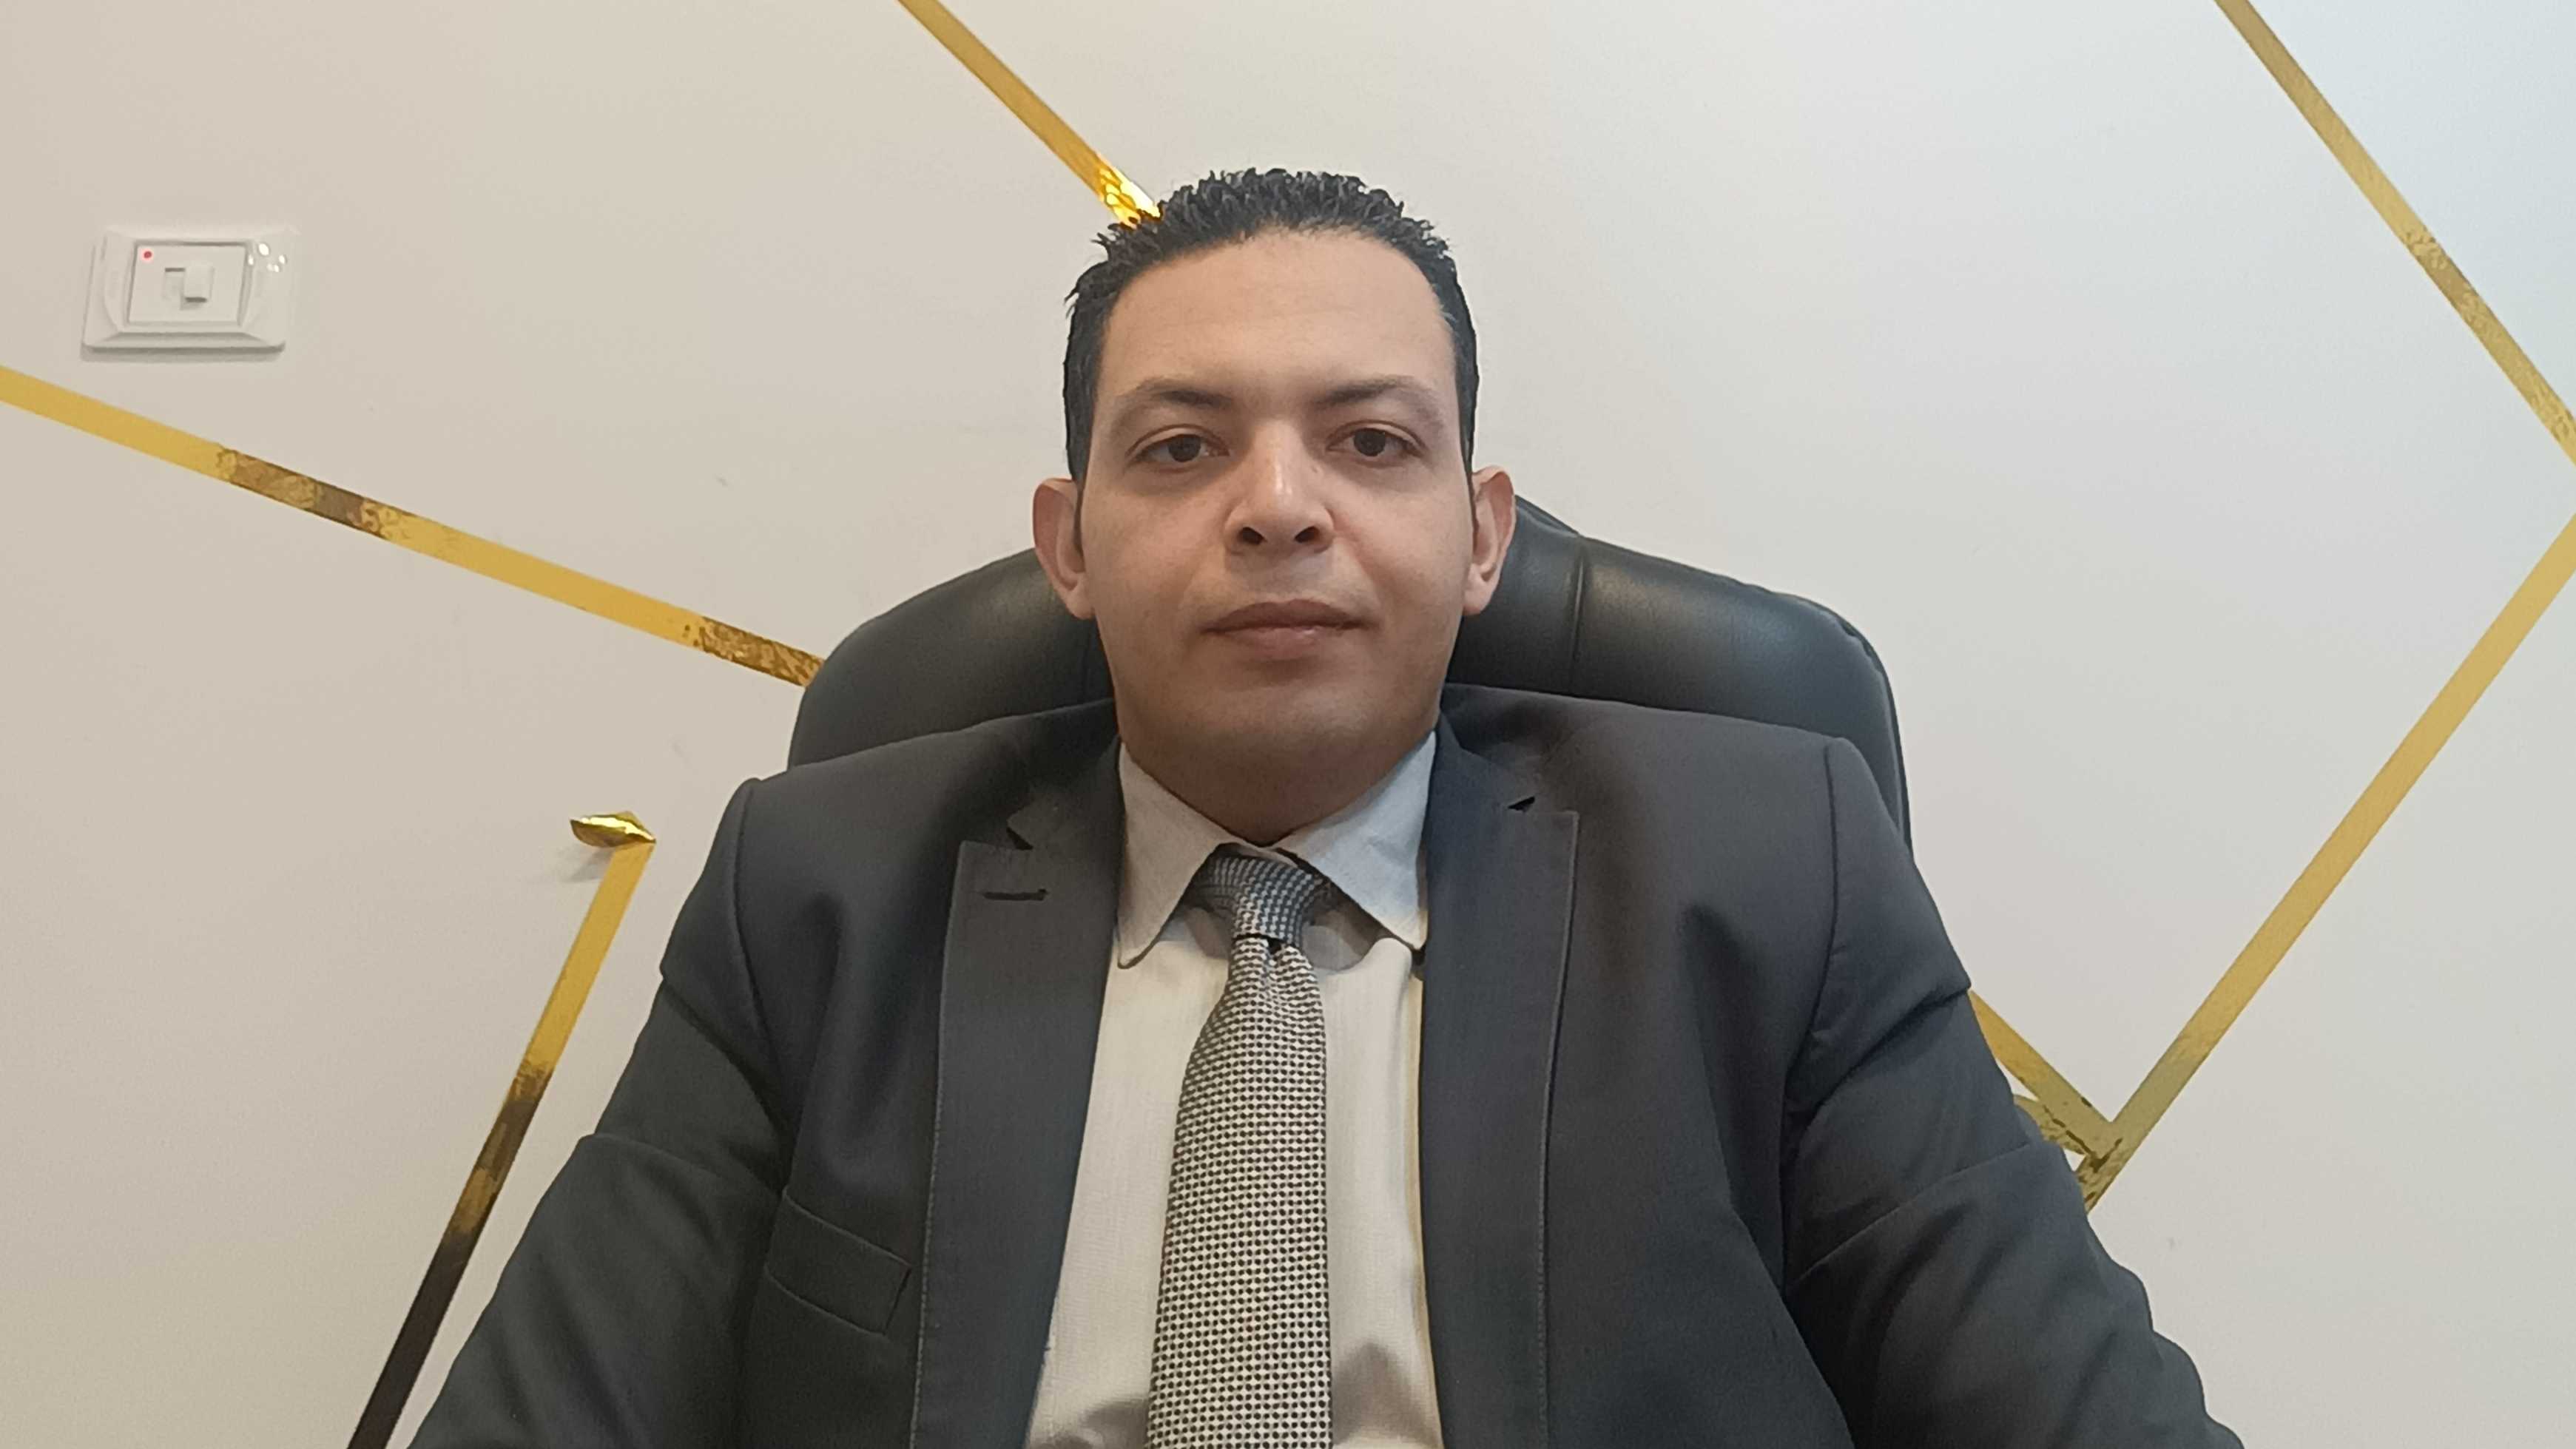 Dr. Mohamed Hesham Alkarafy